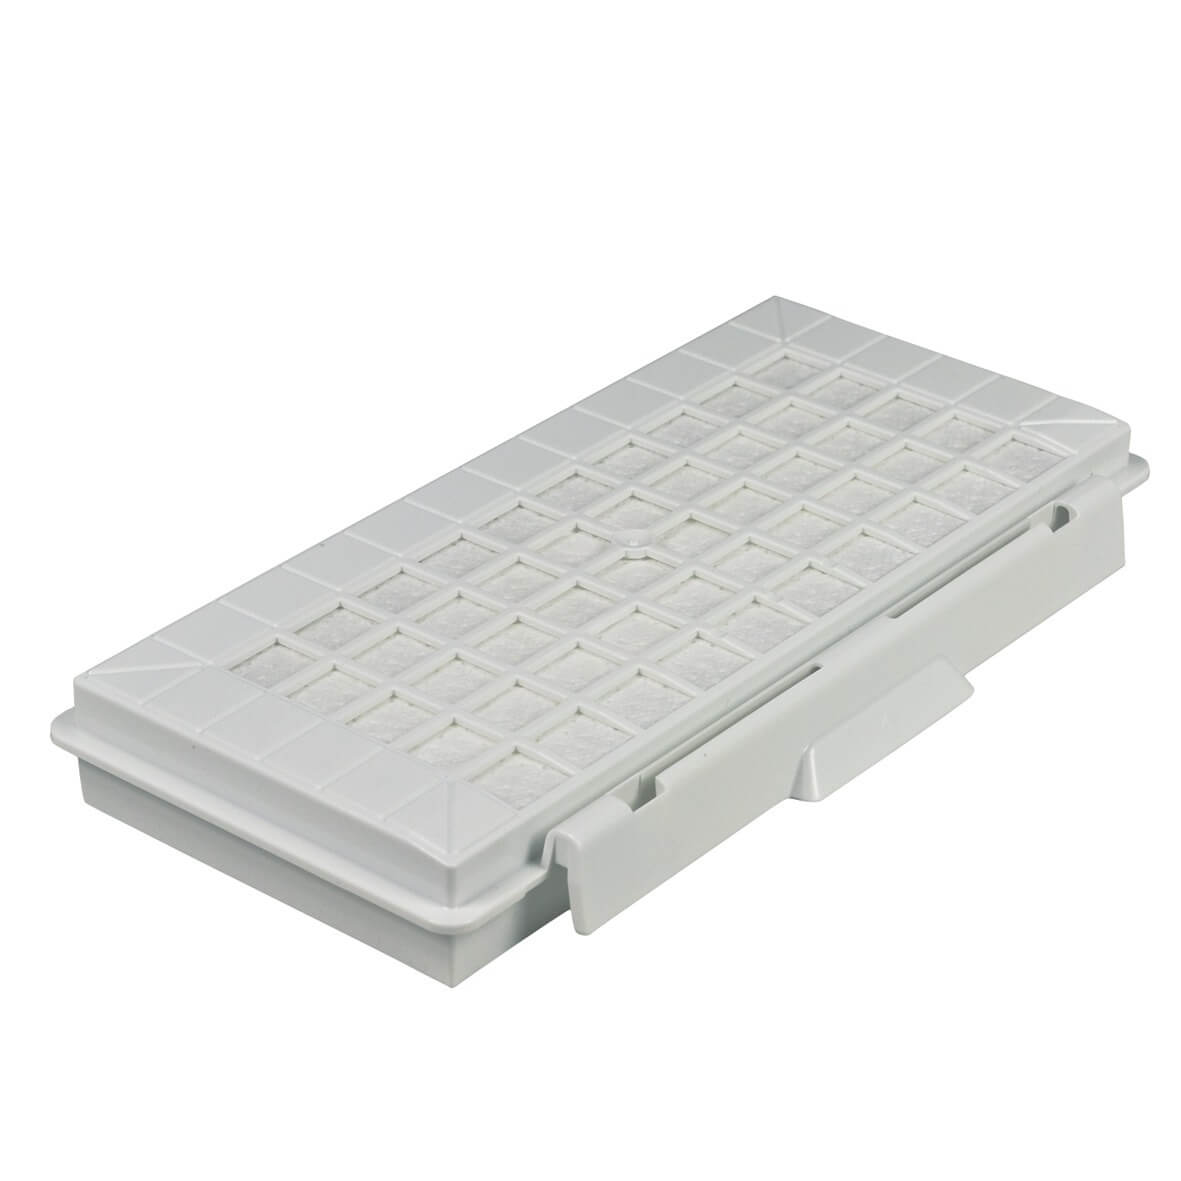 Abluftfilterkassette BSH 17004549 F1C5L Lamellenfilter für Staubsauger (KD-17004549)